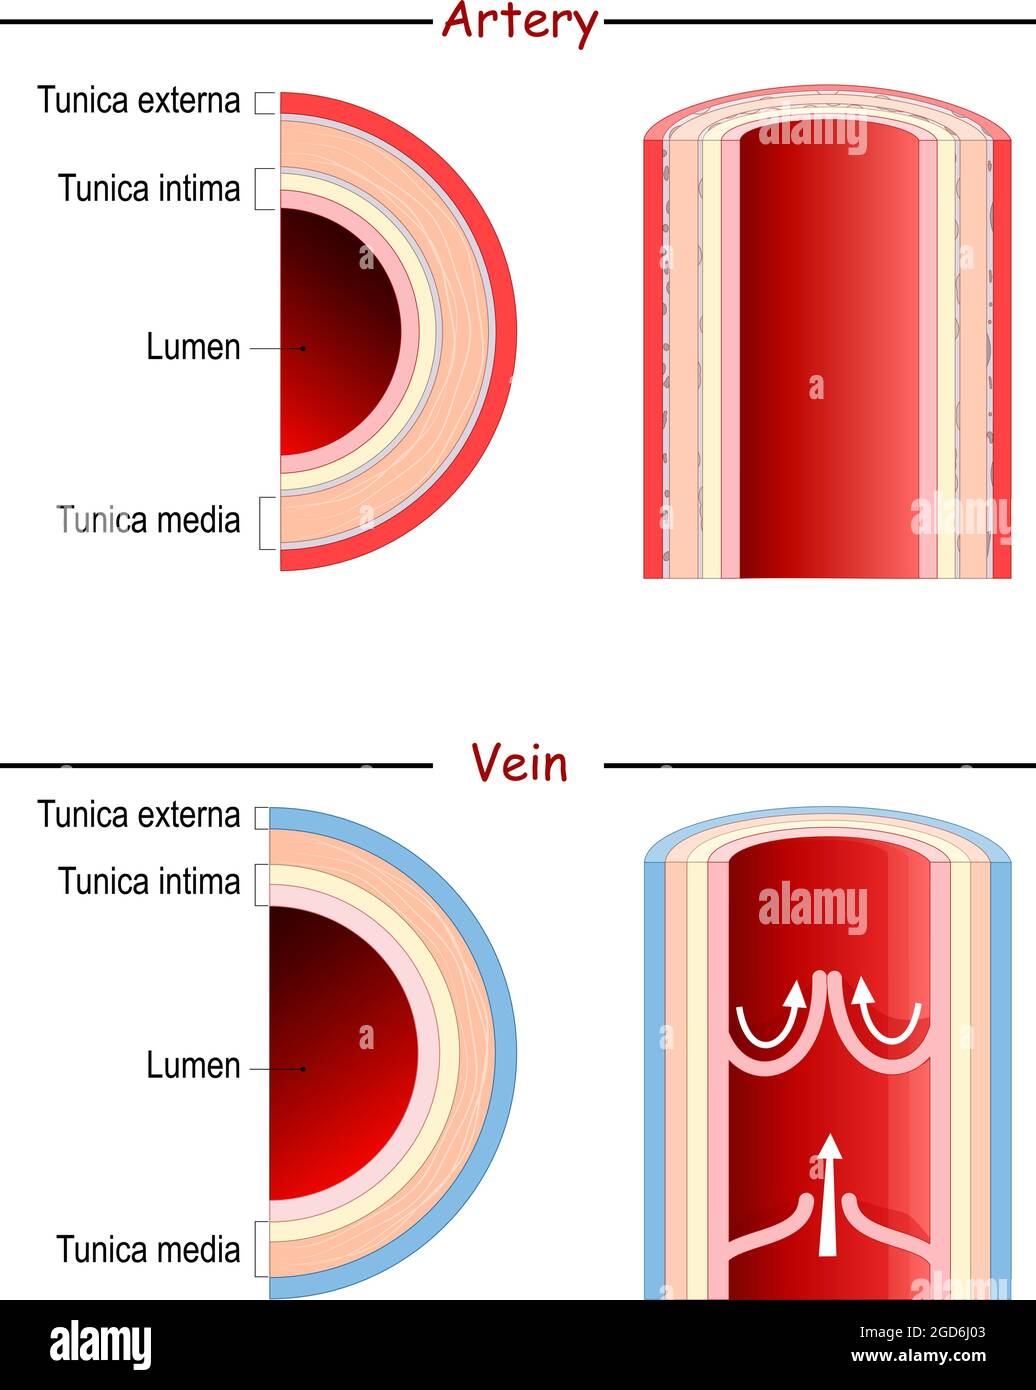 Anatomie von Venen und Arterien. Vergleich und Unterschied. Longitudinales und querschnittes menschliches Blutgefäß. Poster für Medizin und Bildung. Vektor Stock Vektor